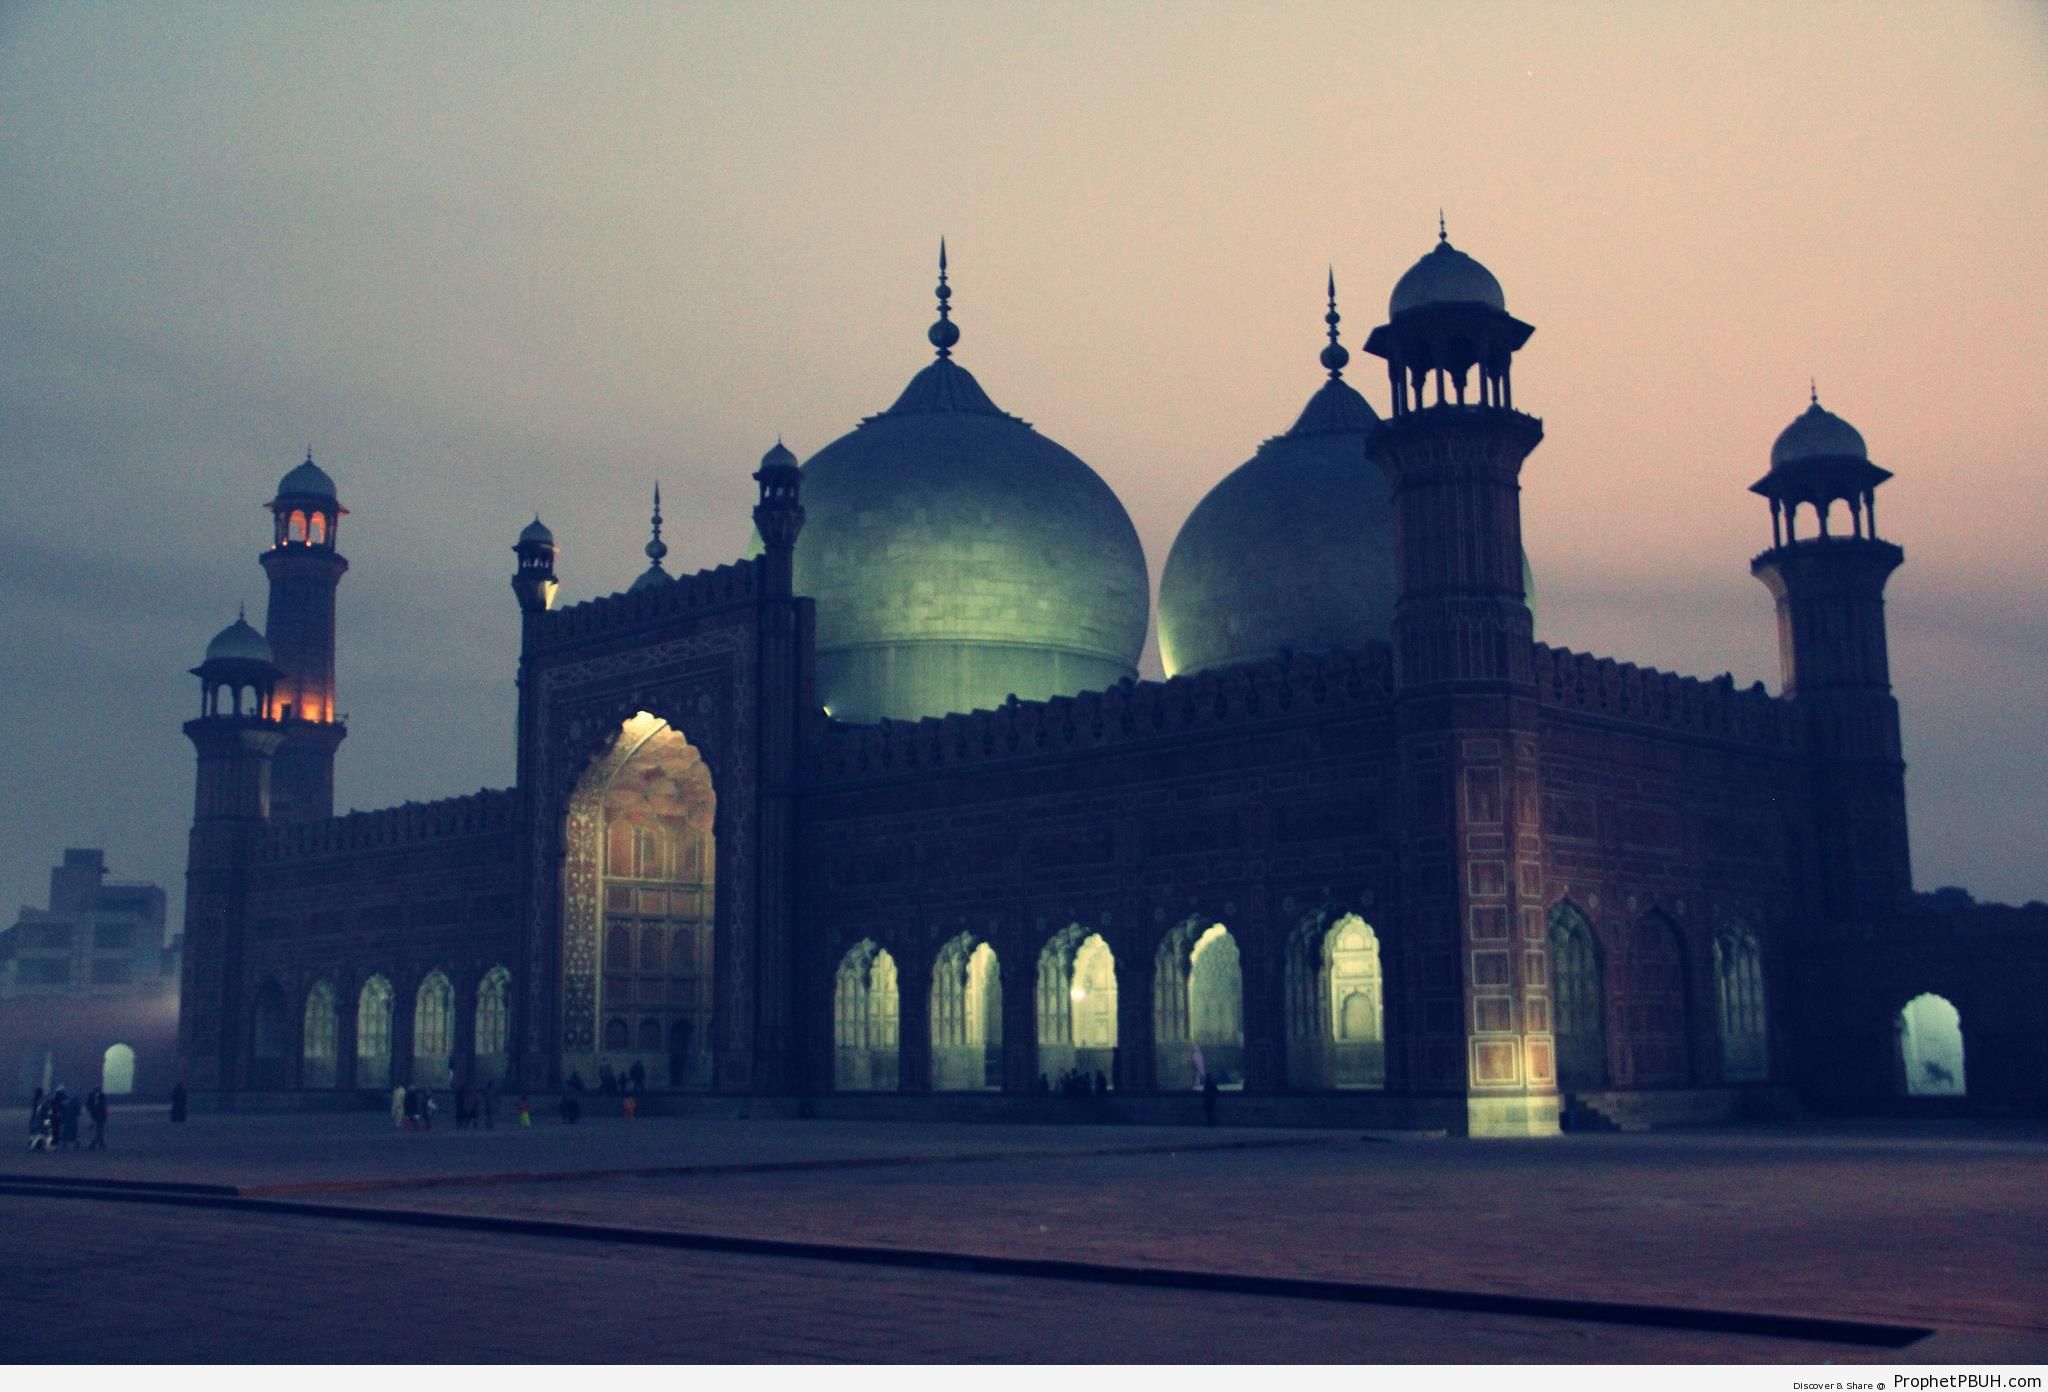 Evening Twilight Photo of Badshahi Mosque in Lahore, Pakistan - Badshahi Masjid in Lahore, Pakistan -Picture